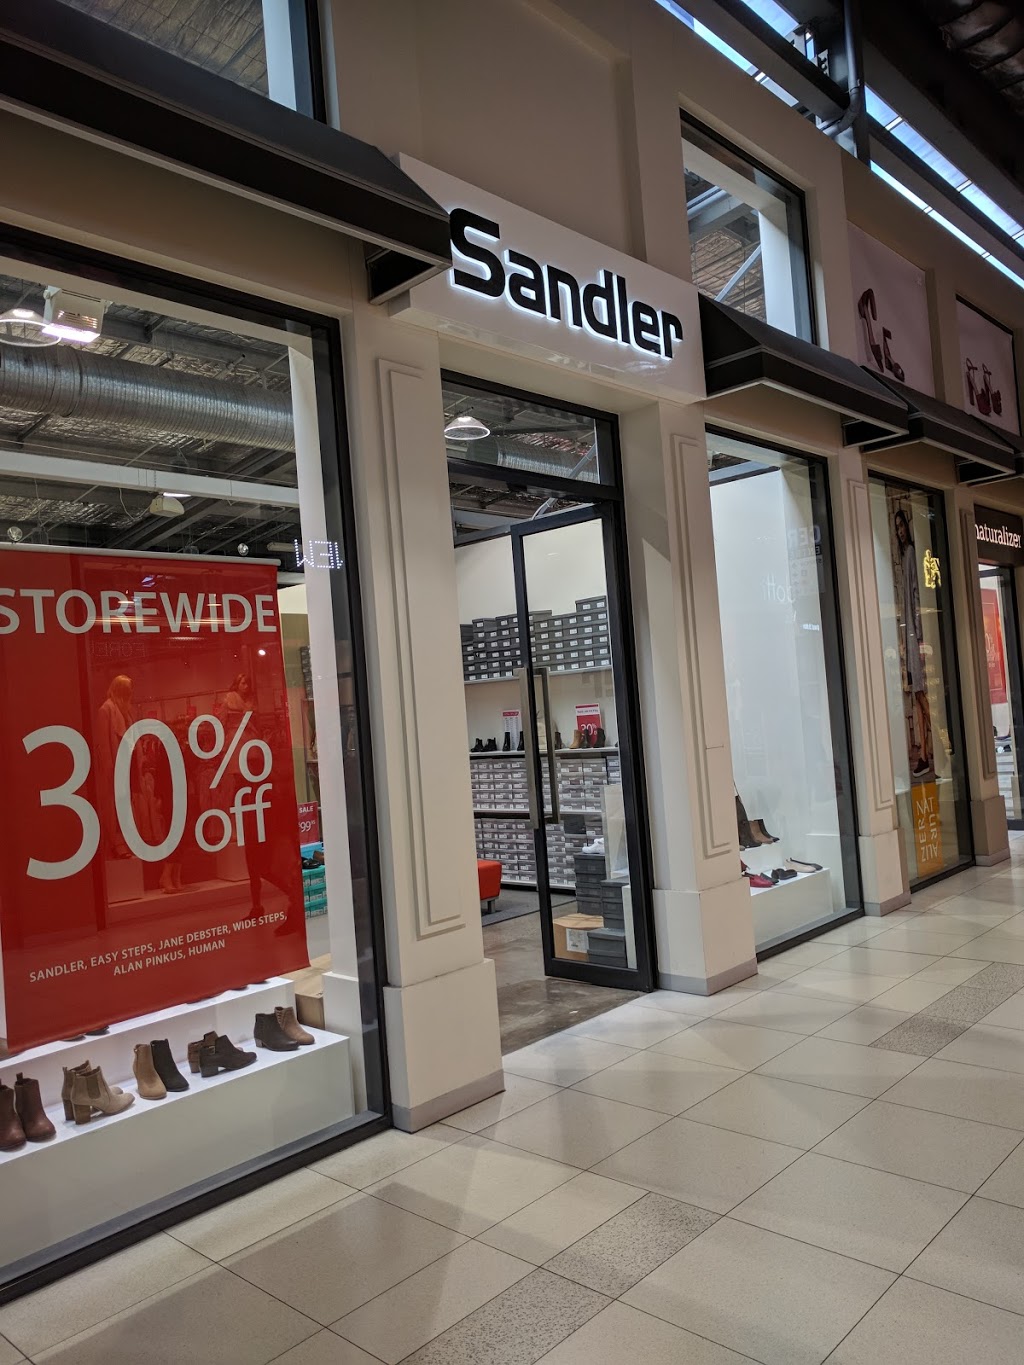 Sandler Factory Outlet | store | 201 Spencer St, Docklands VIC 3008, Australia | 0386897520 OR +61 3 8689 7520